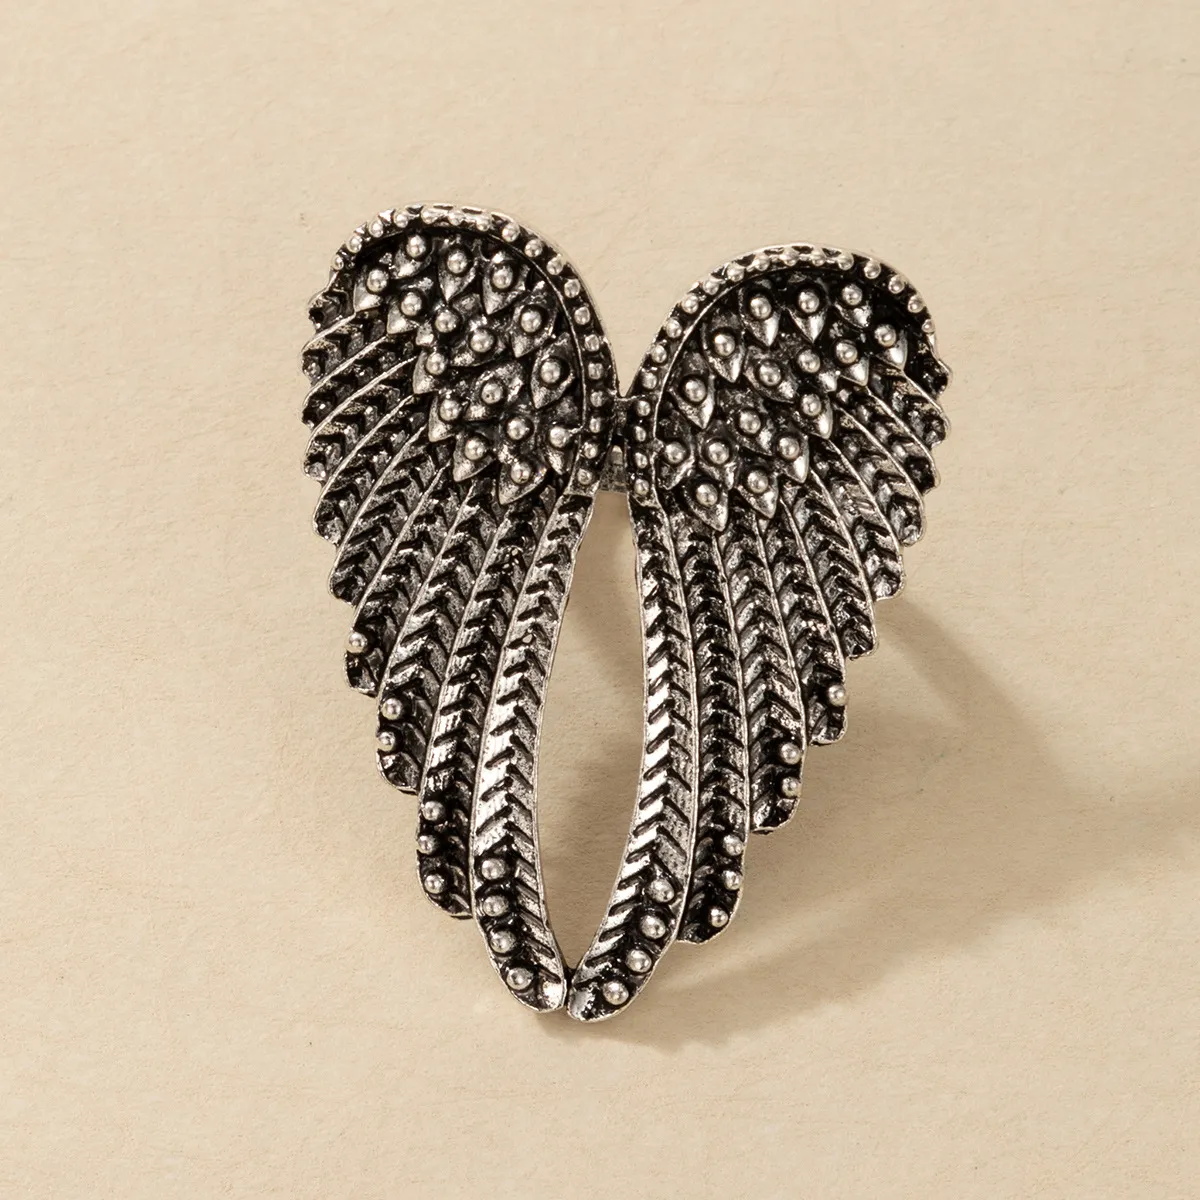 Moda anjo asas anel punk motociclista jóias antique ouro cor vintage rhinestone anéis para homens mulheres